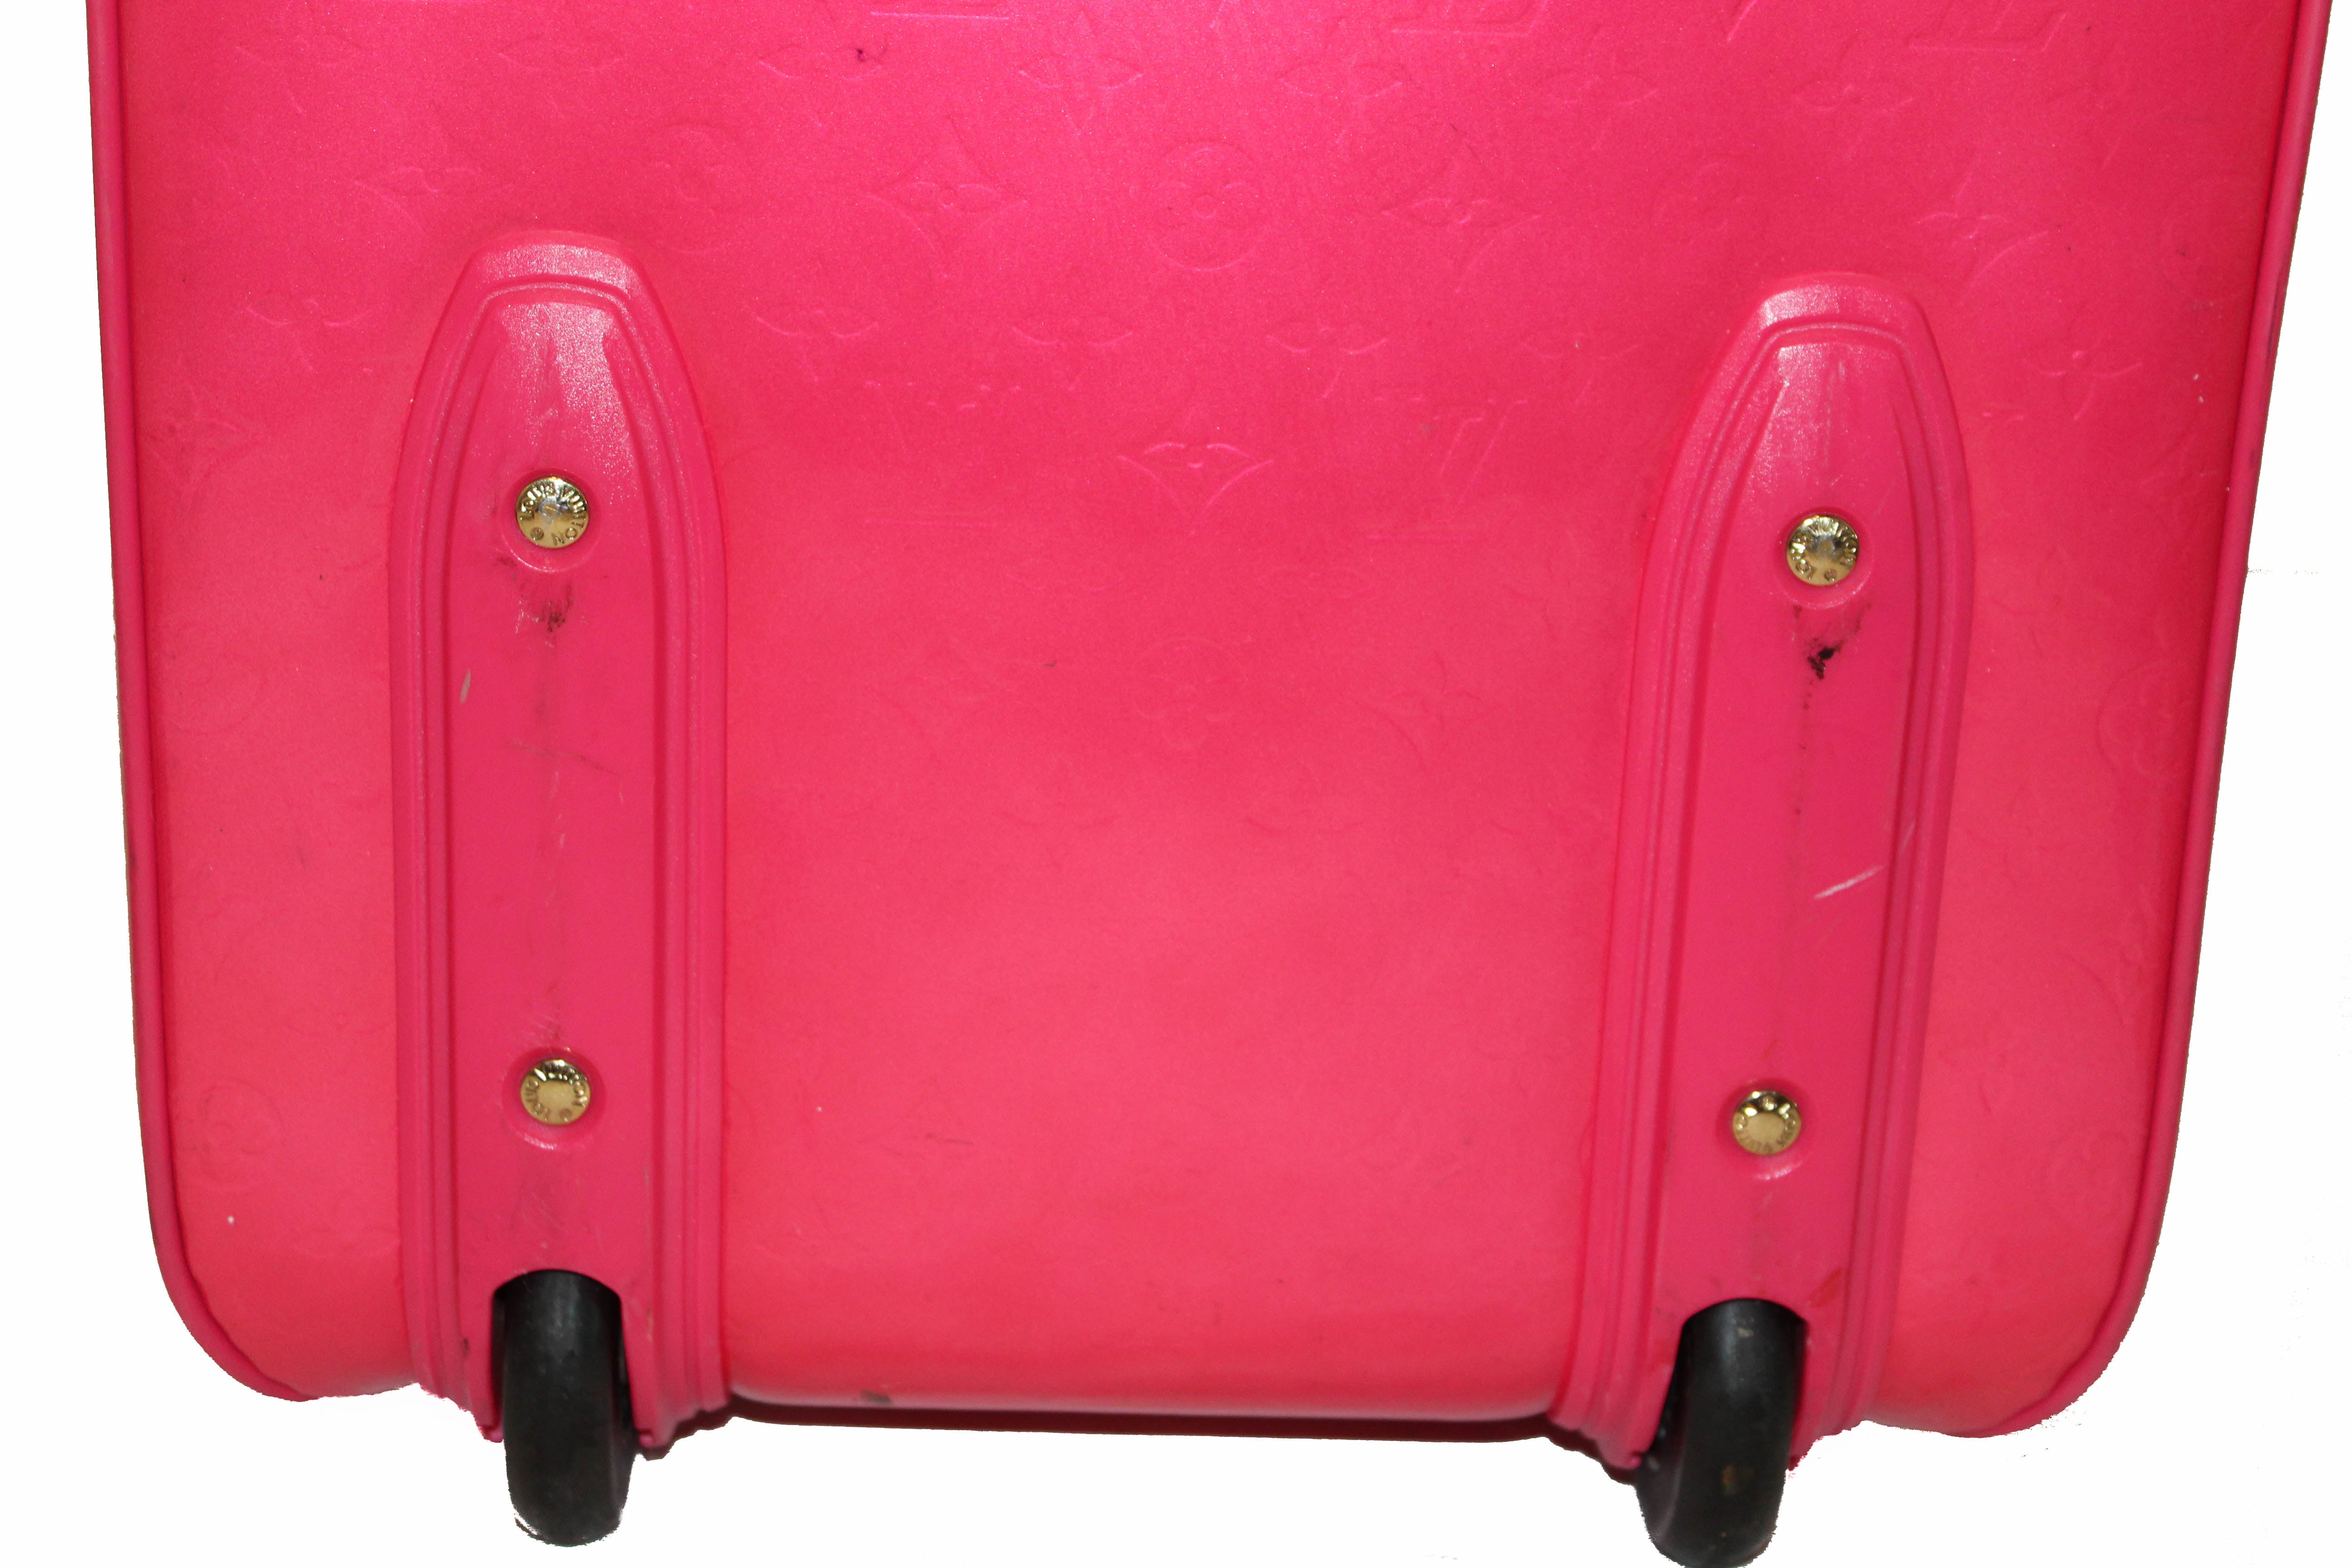 Louis Vuitton Vernis Pegase 45 Carryon Luggage Suitcase Red M91278